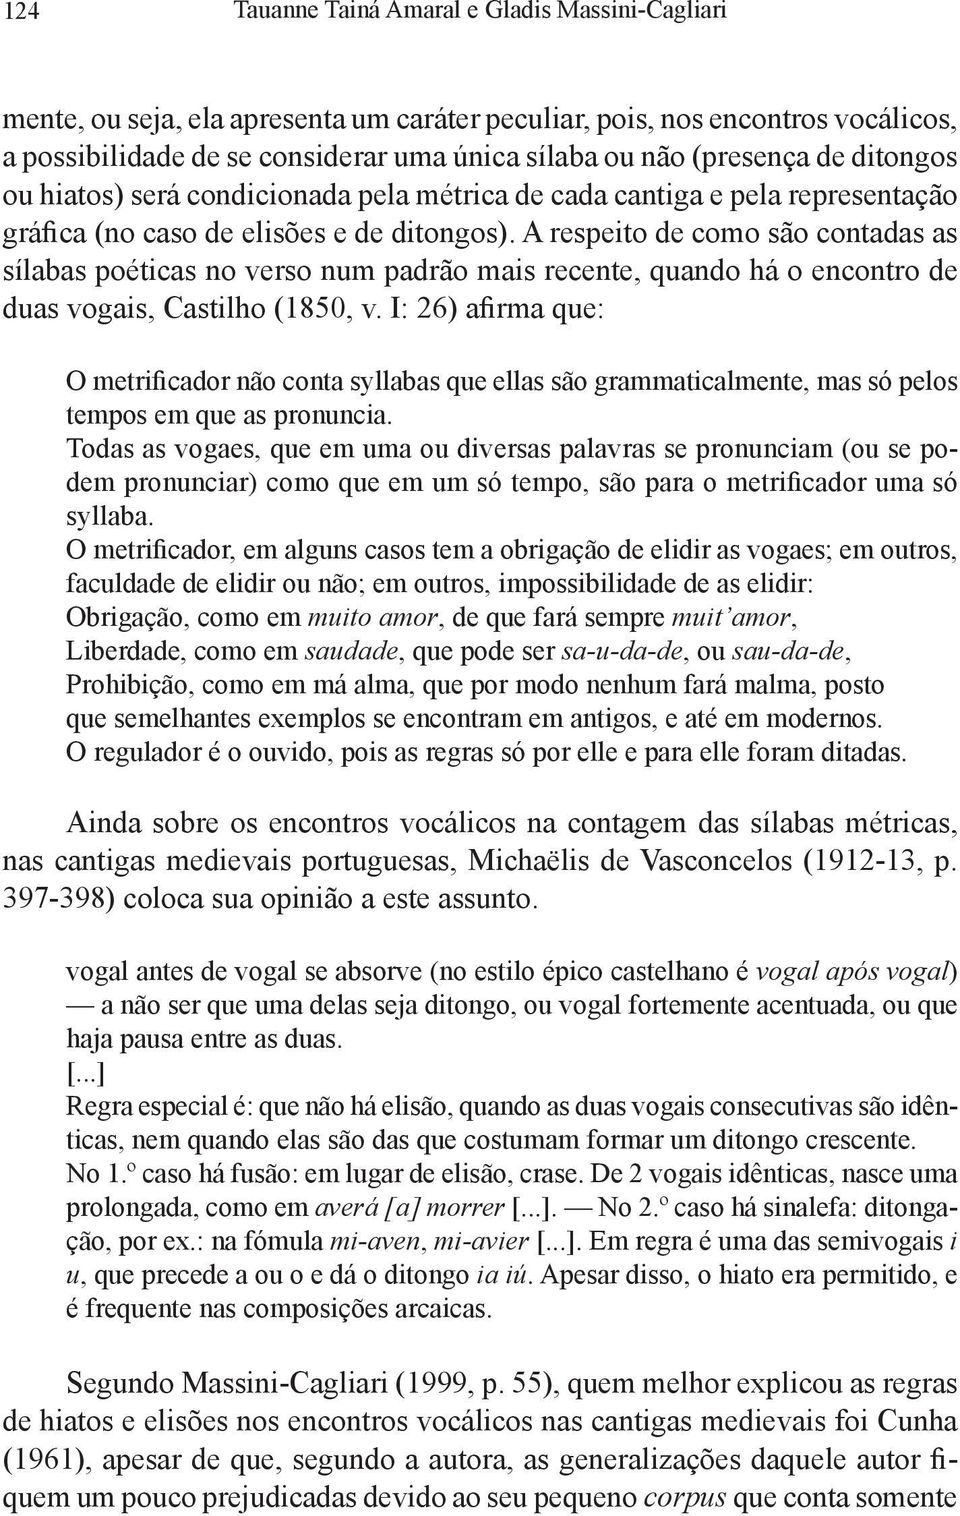 A respeito de como são contadas as sílabas poéticas no verso num padrão mais recente, quando há o encontro de duas vogais, Castilho (1850, v.